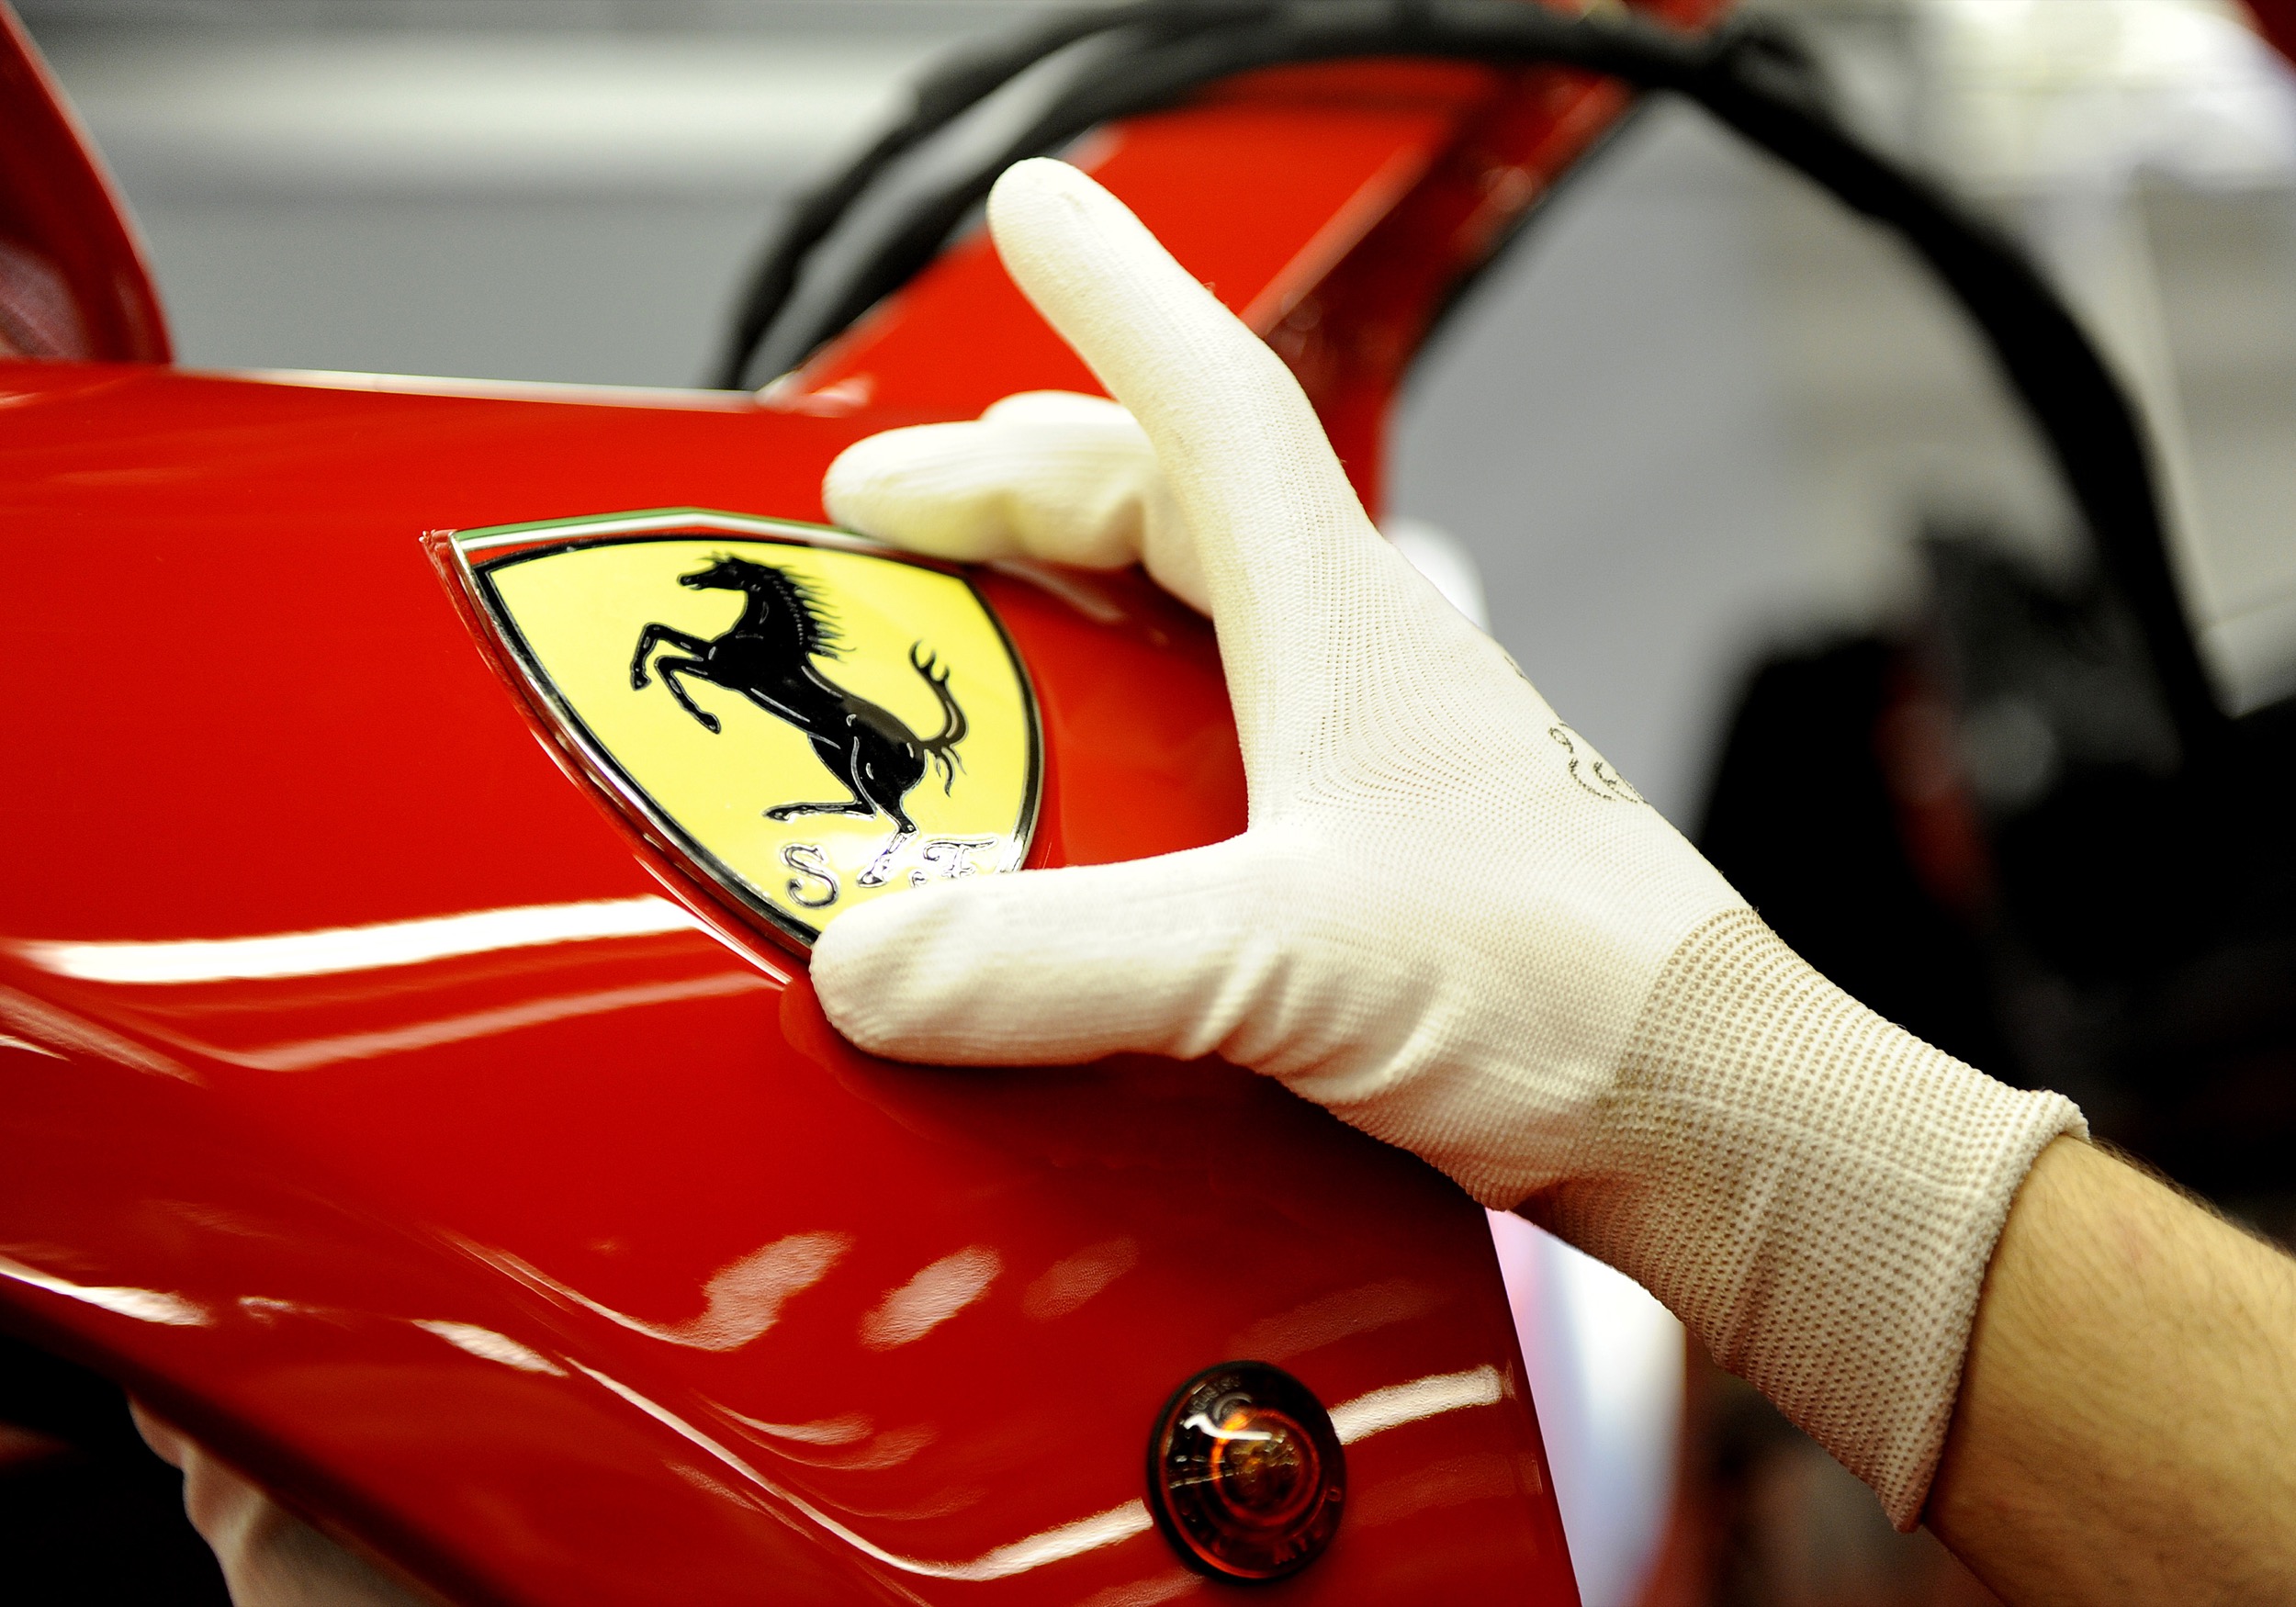 Stabilimento fabbrica Ferrari 5. Ferrari elettrica entro il 2030